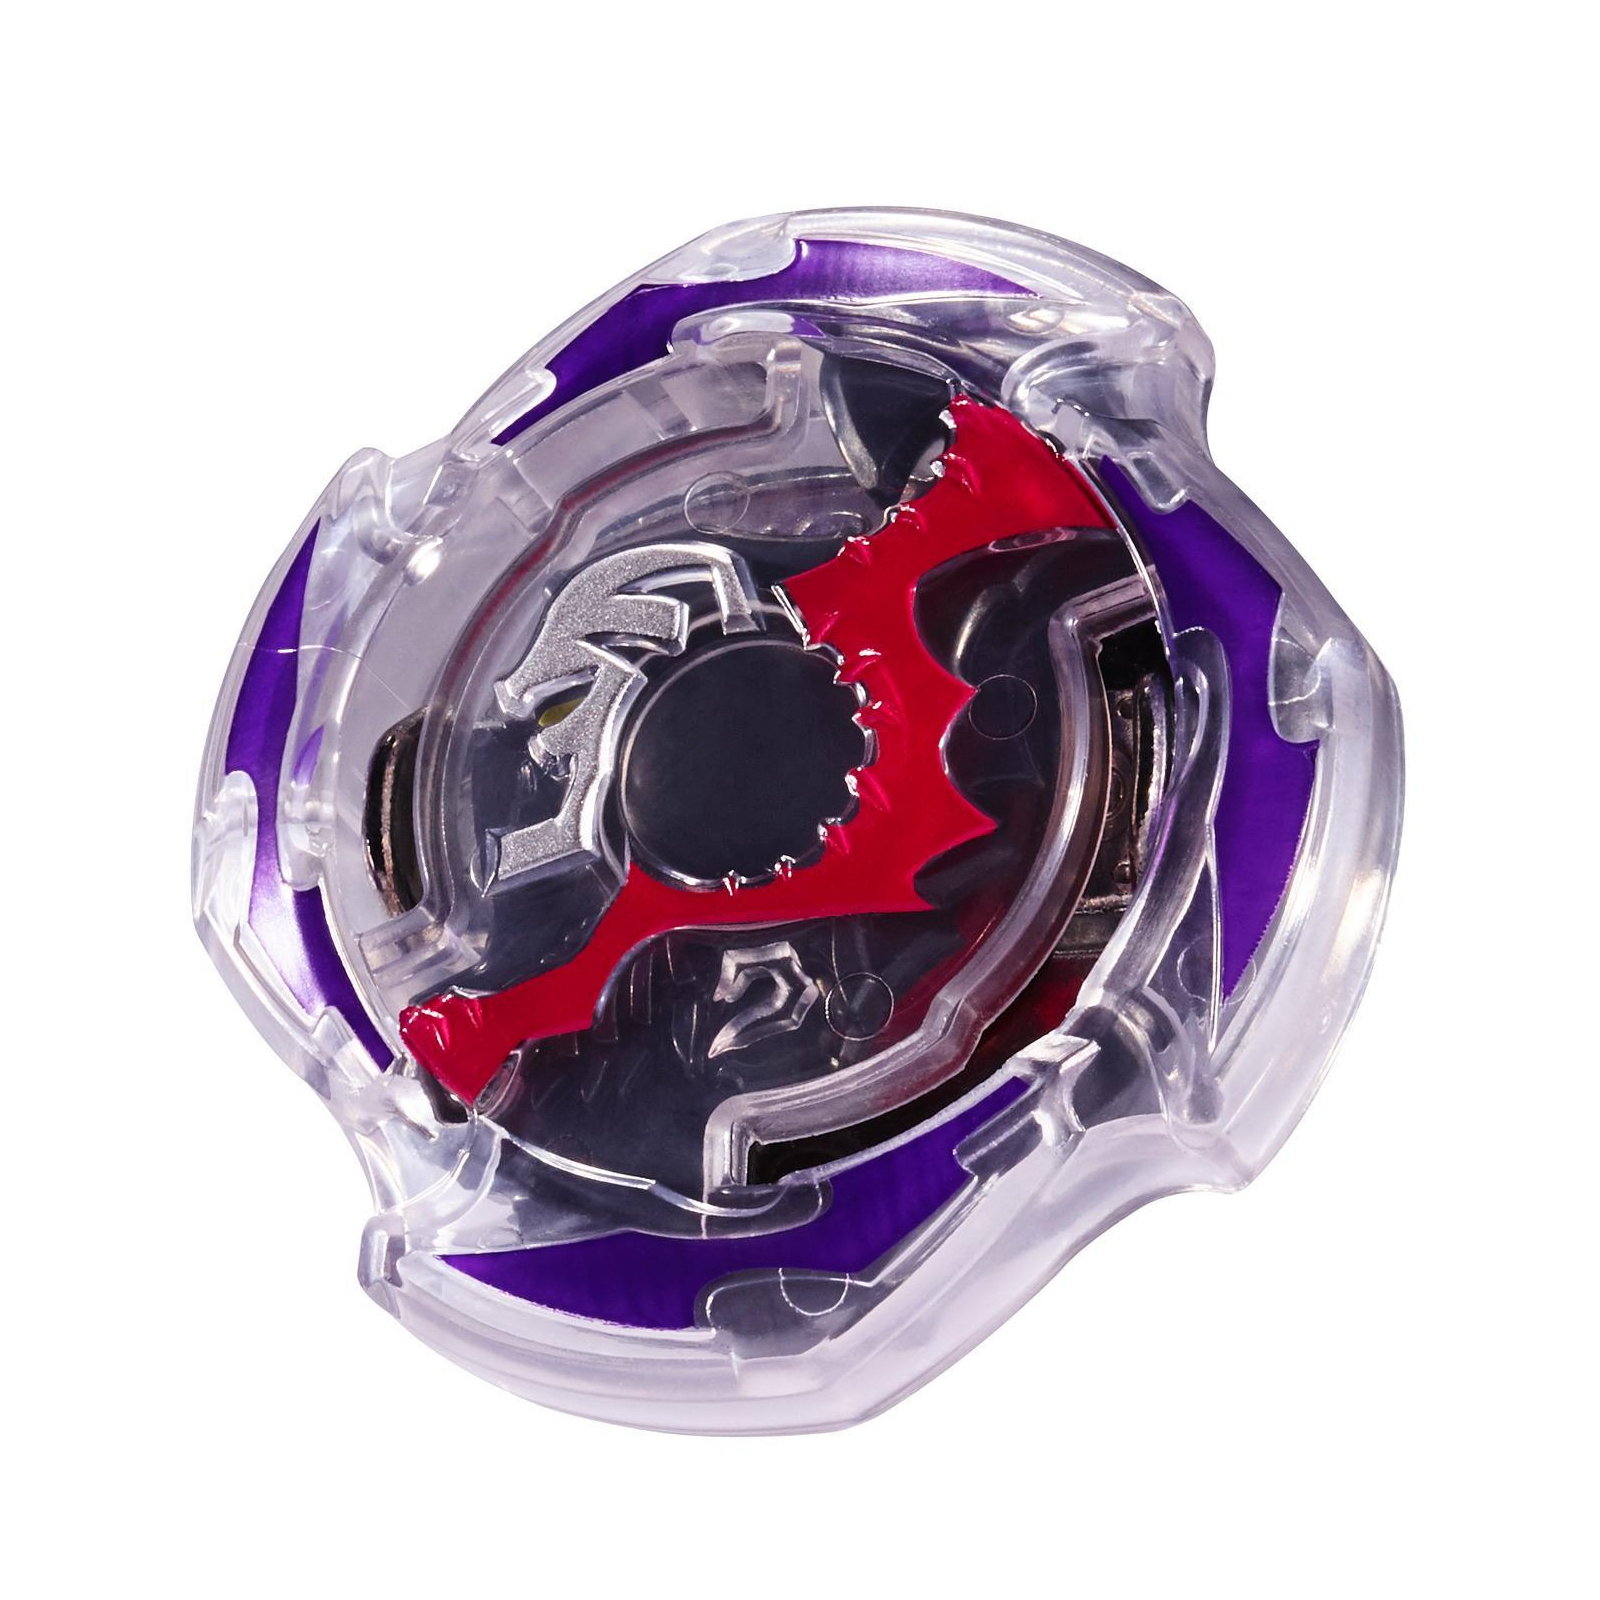 Волчок Hasbro Beyblade Single Top Doomscizor (B9505) изображение 2